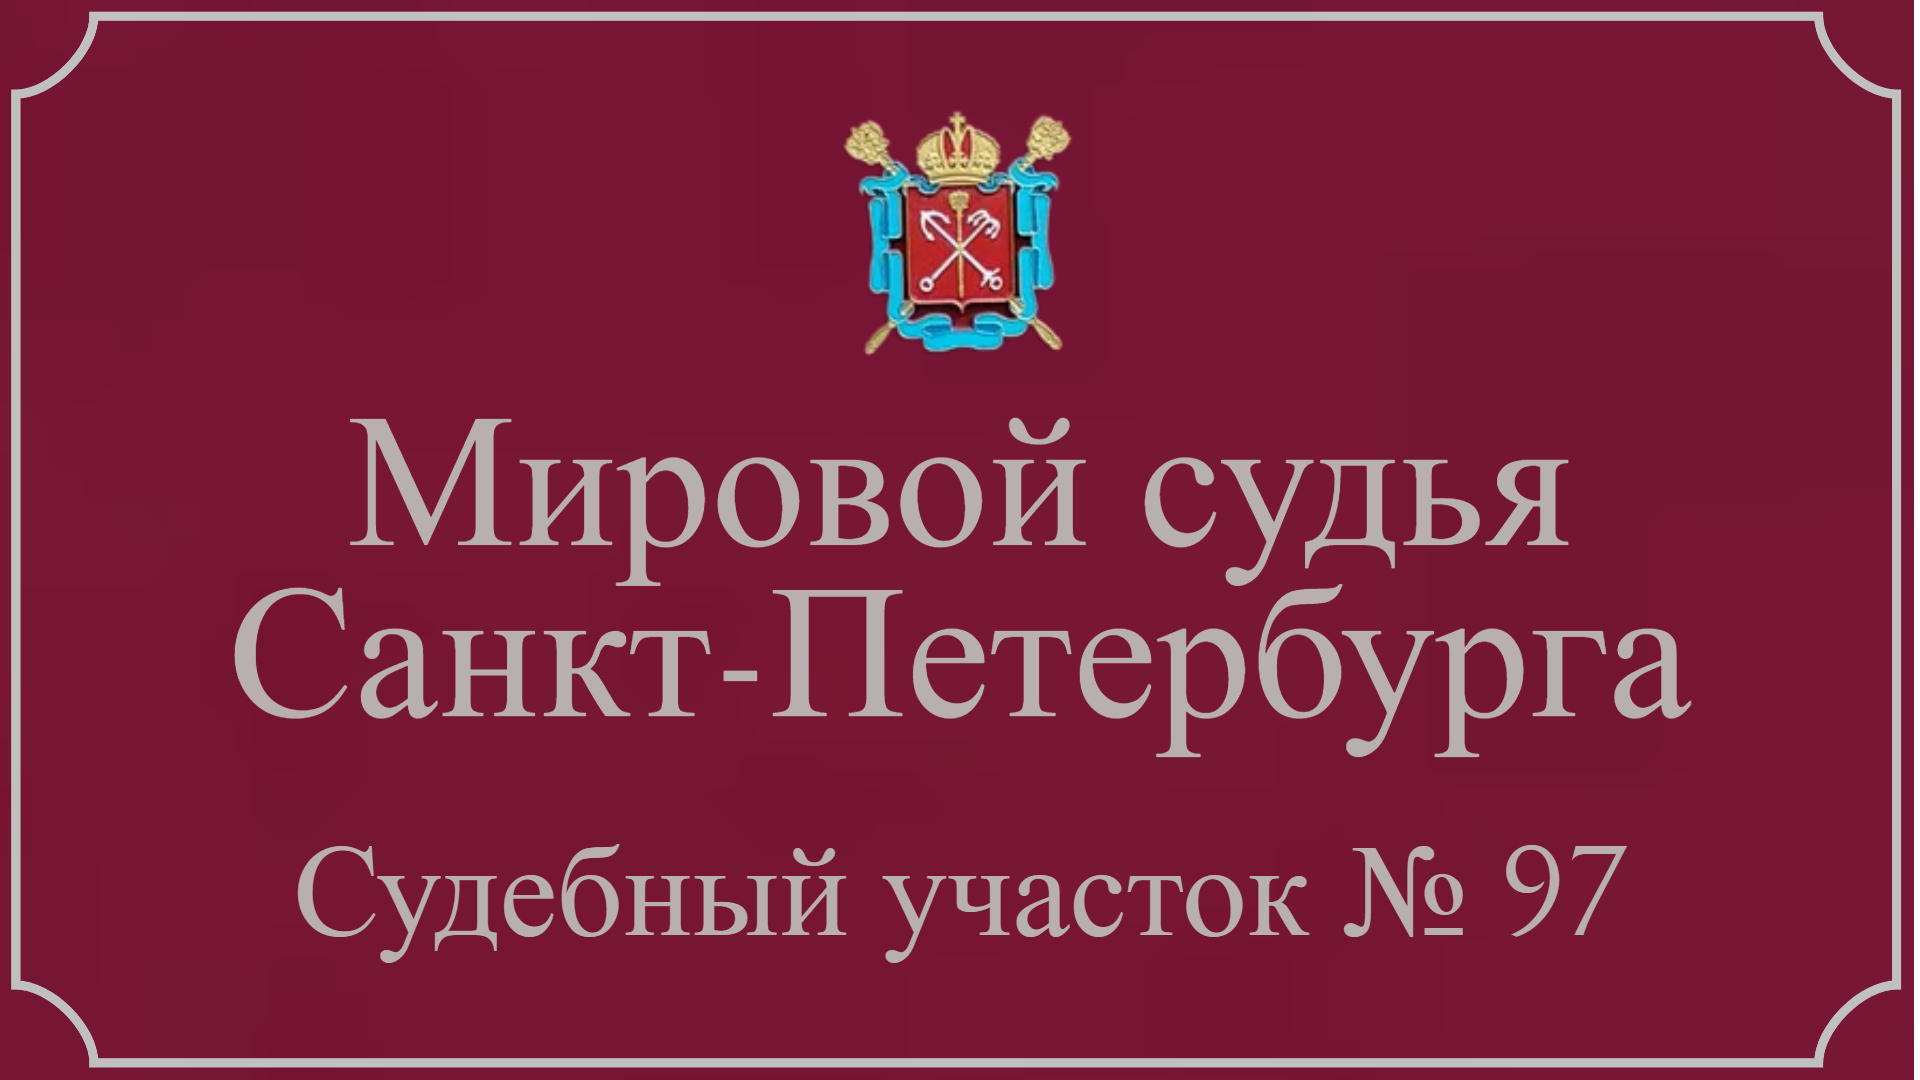 Информация по 97 судебному участку в Санкт-Петербурге.